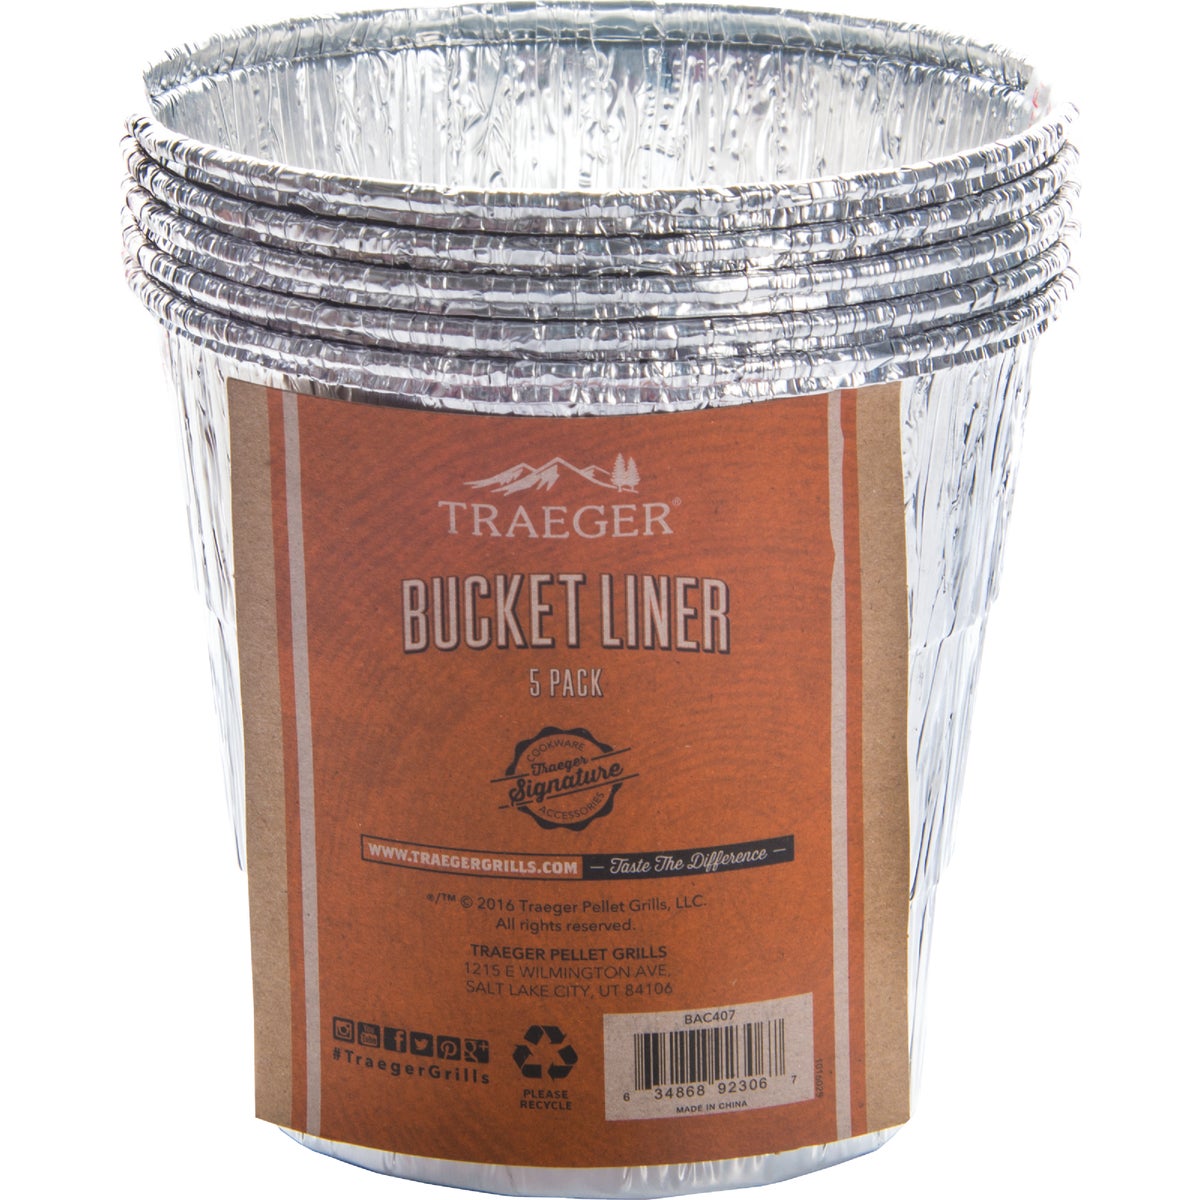 Item 801727, Aluminum bucket liners for Traeger pellet grill drip buckets.